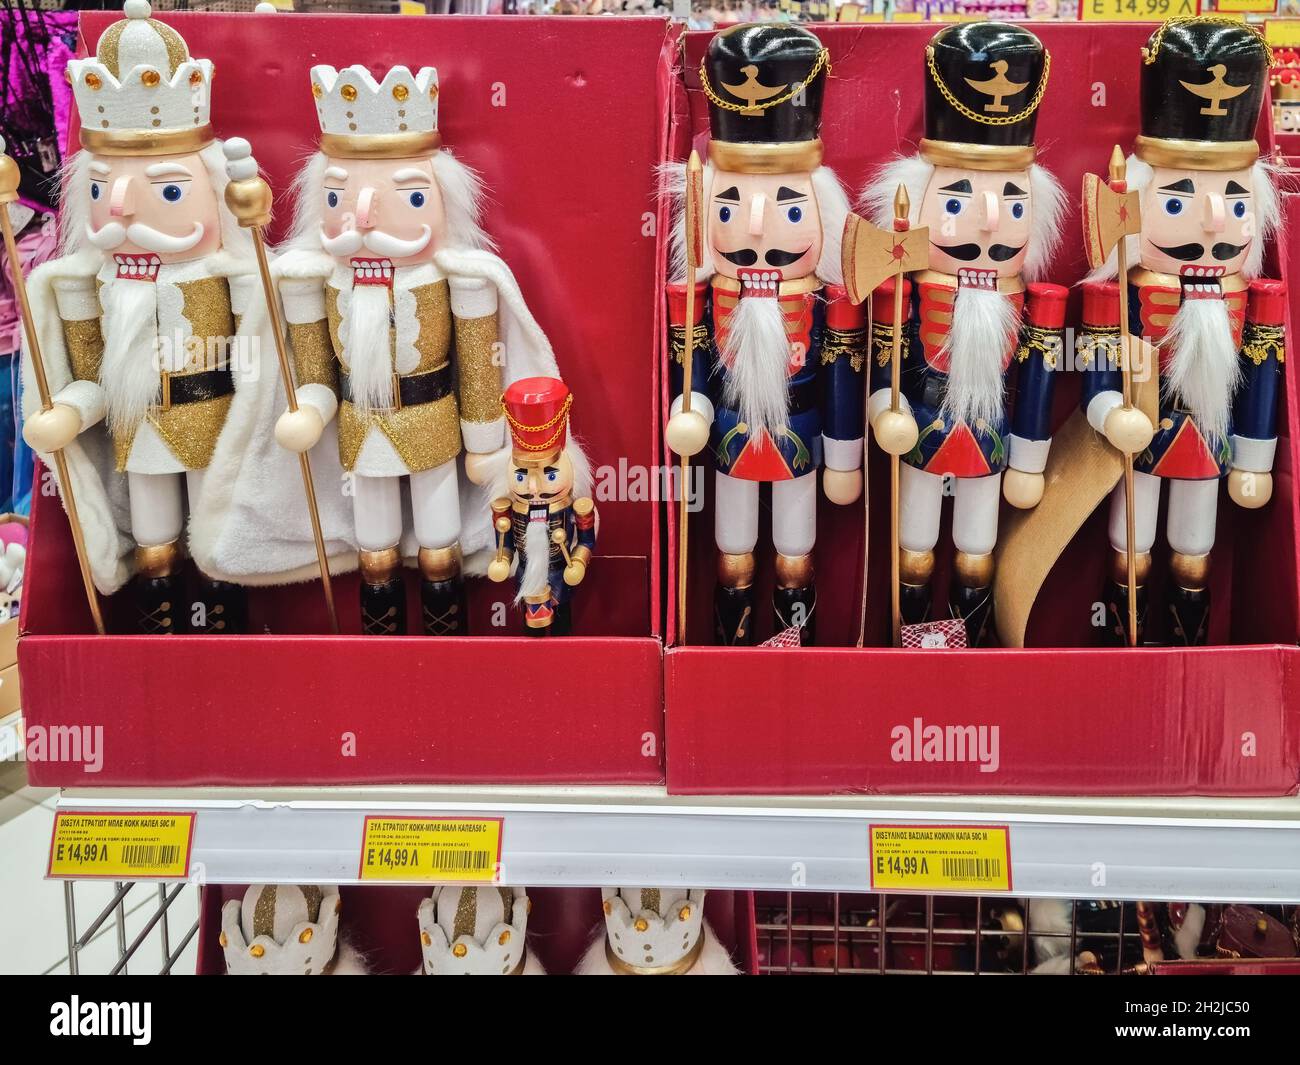 Weihnachtliche dekorative Dose Nussknacker in den Regalen des Spielwarenladens. Große hölzerne Soldatenfiguren, die in den Jumbo Hellenic-Läden in Thessaloniki, Griechenland, ausgestellt sind. Stockfoto